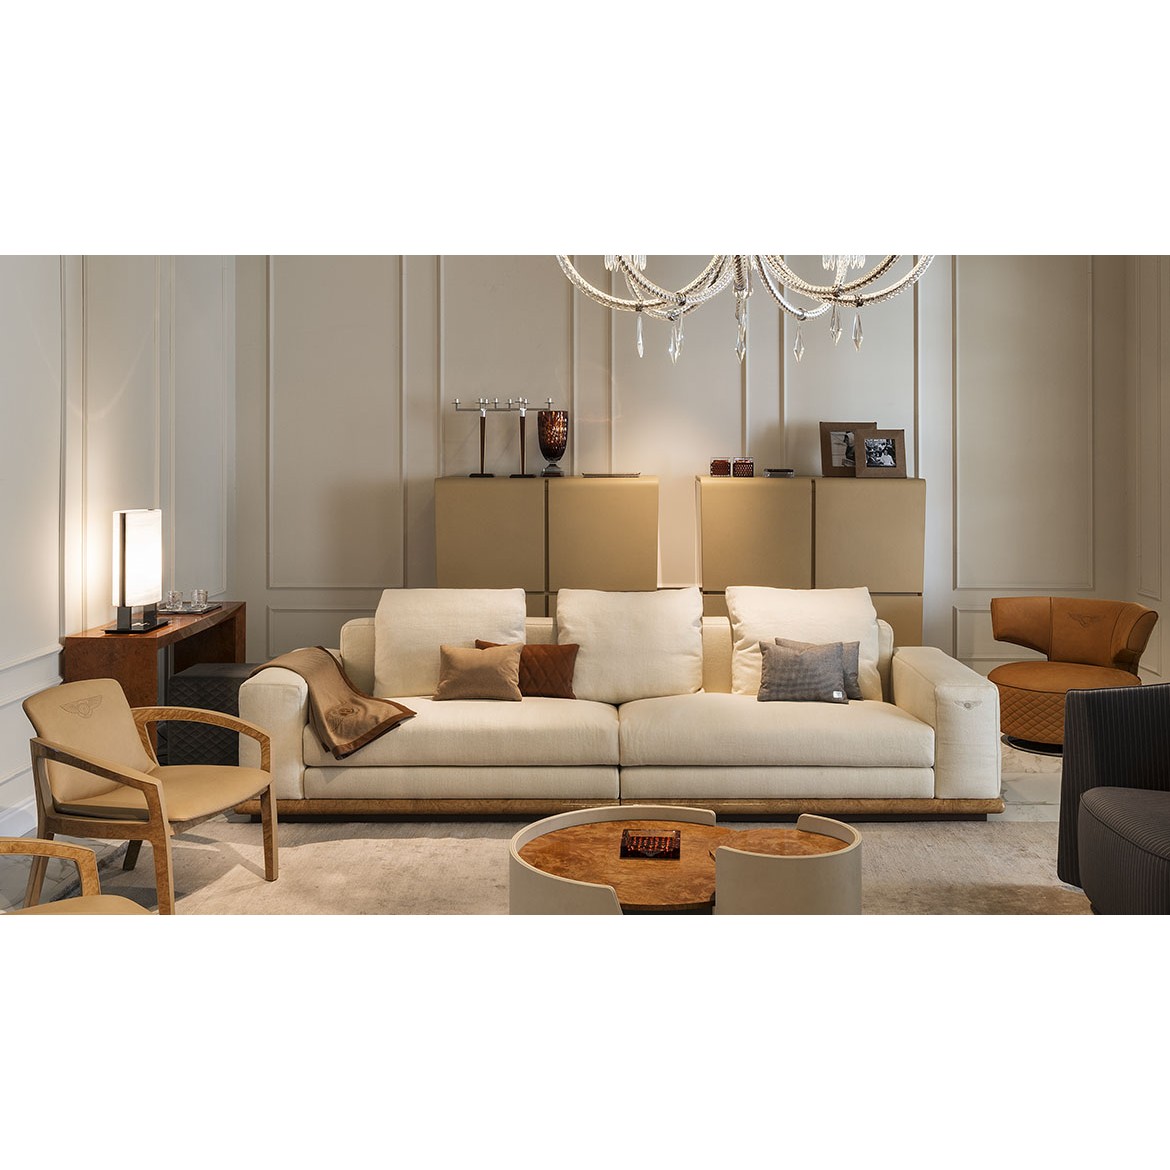 Диван Wellington Sofa 2, дизайн Bentley Home